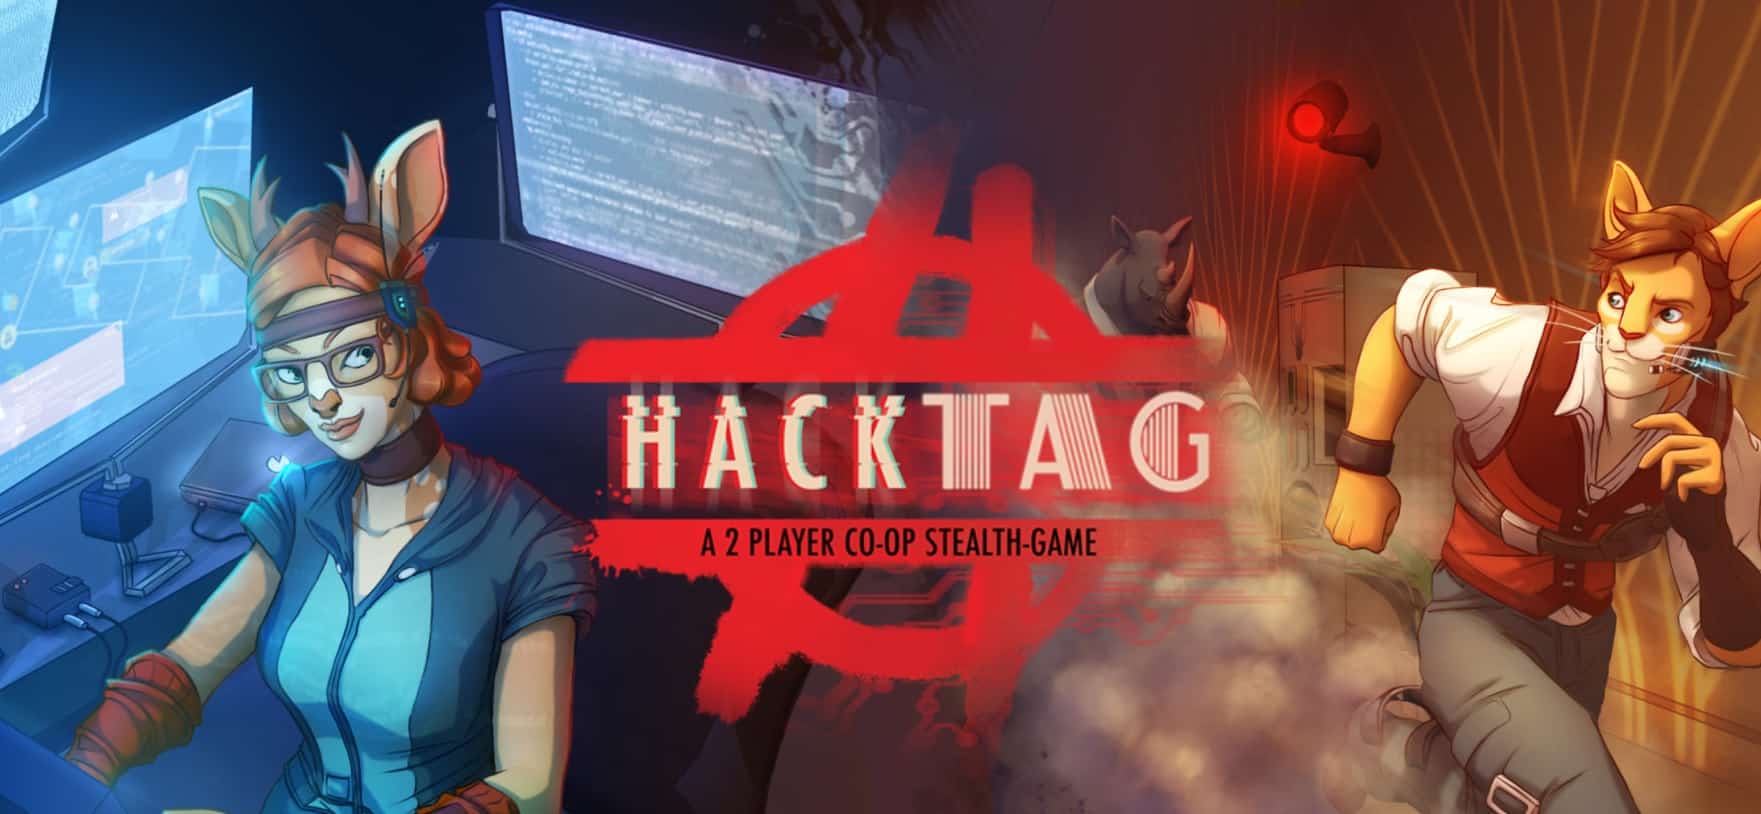 Hacktag เกมลอบเร้นที่ต้องใช้คนเล่นสองคน จะหลุดจาก Steam Early Access 14 ก.พ. นี้